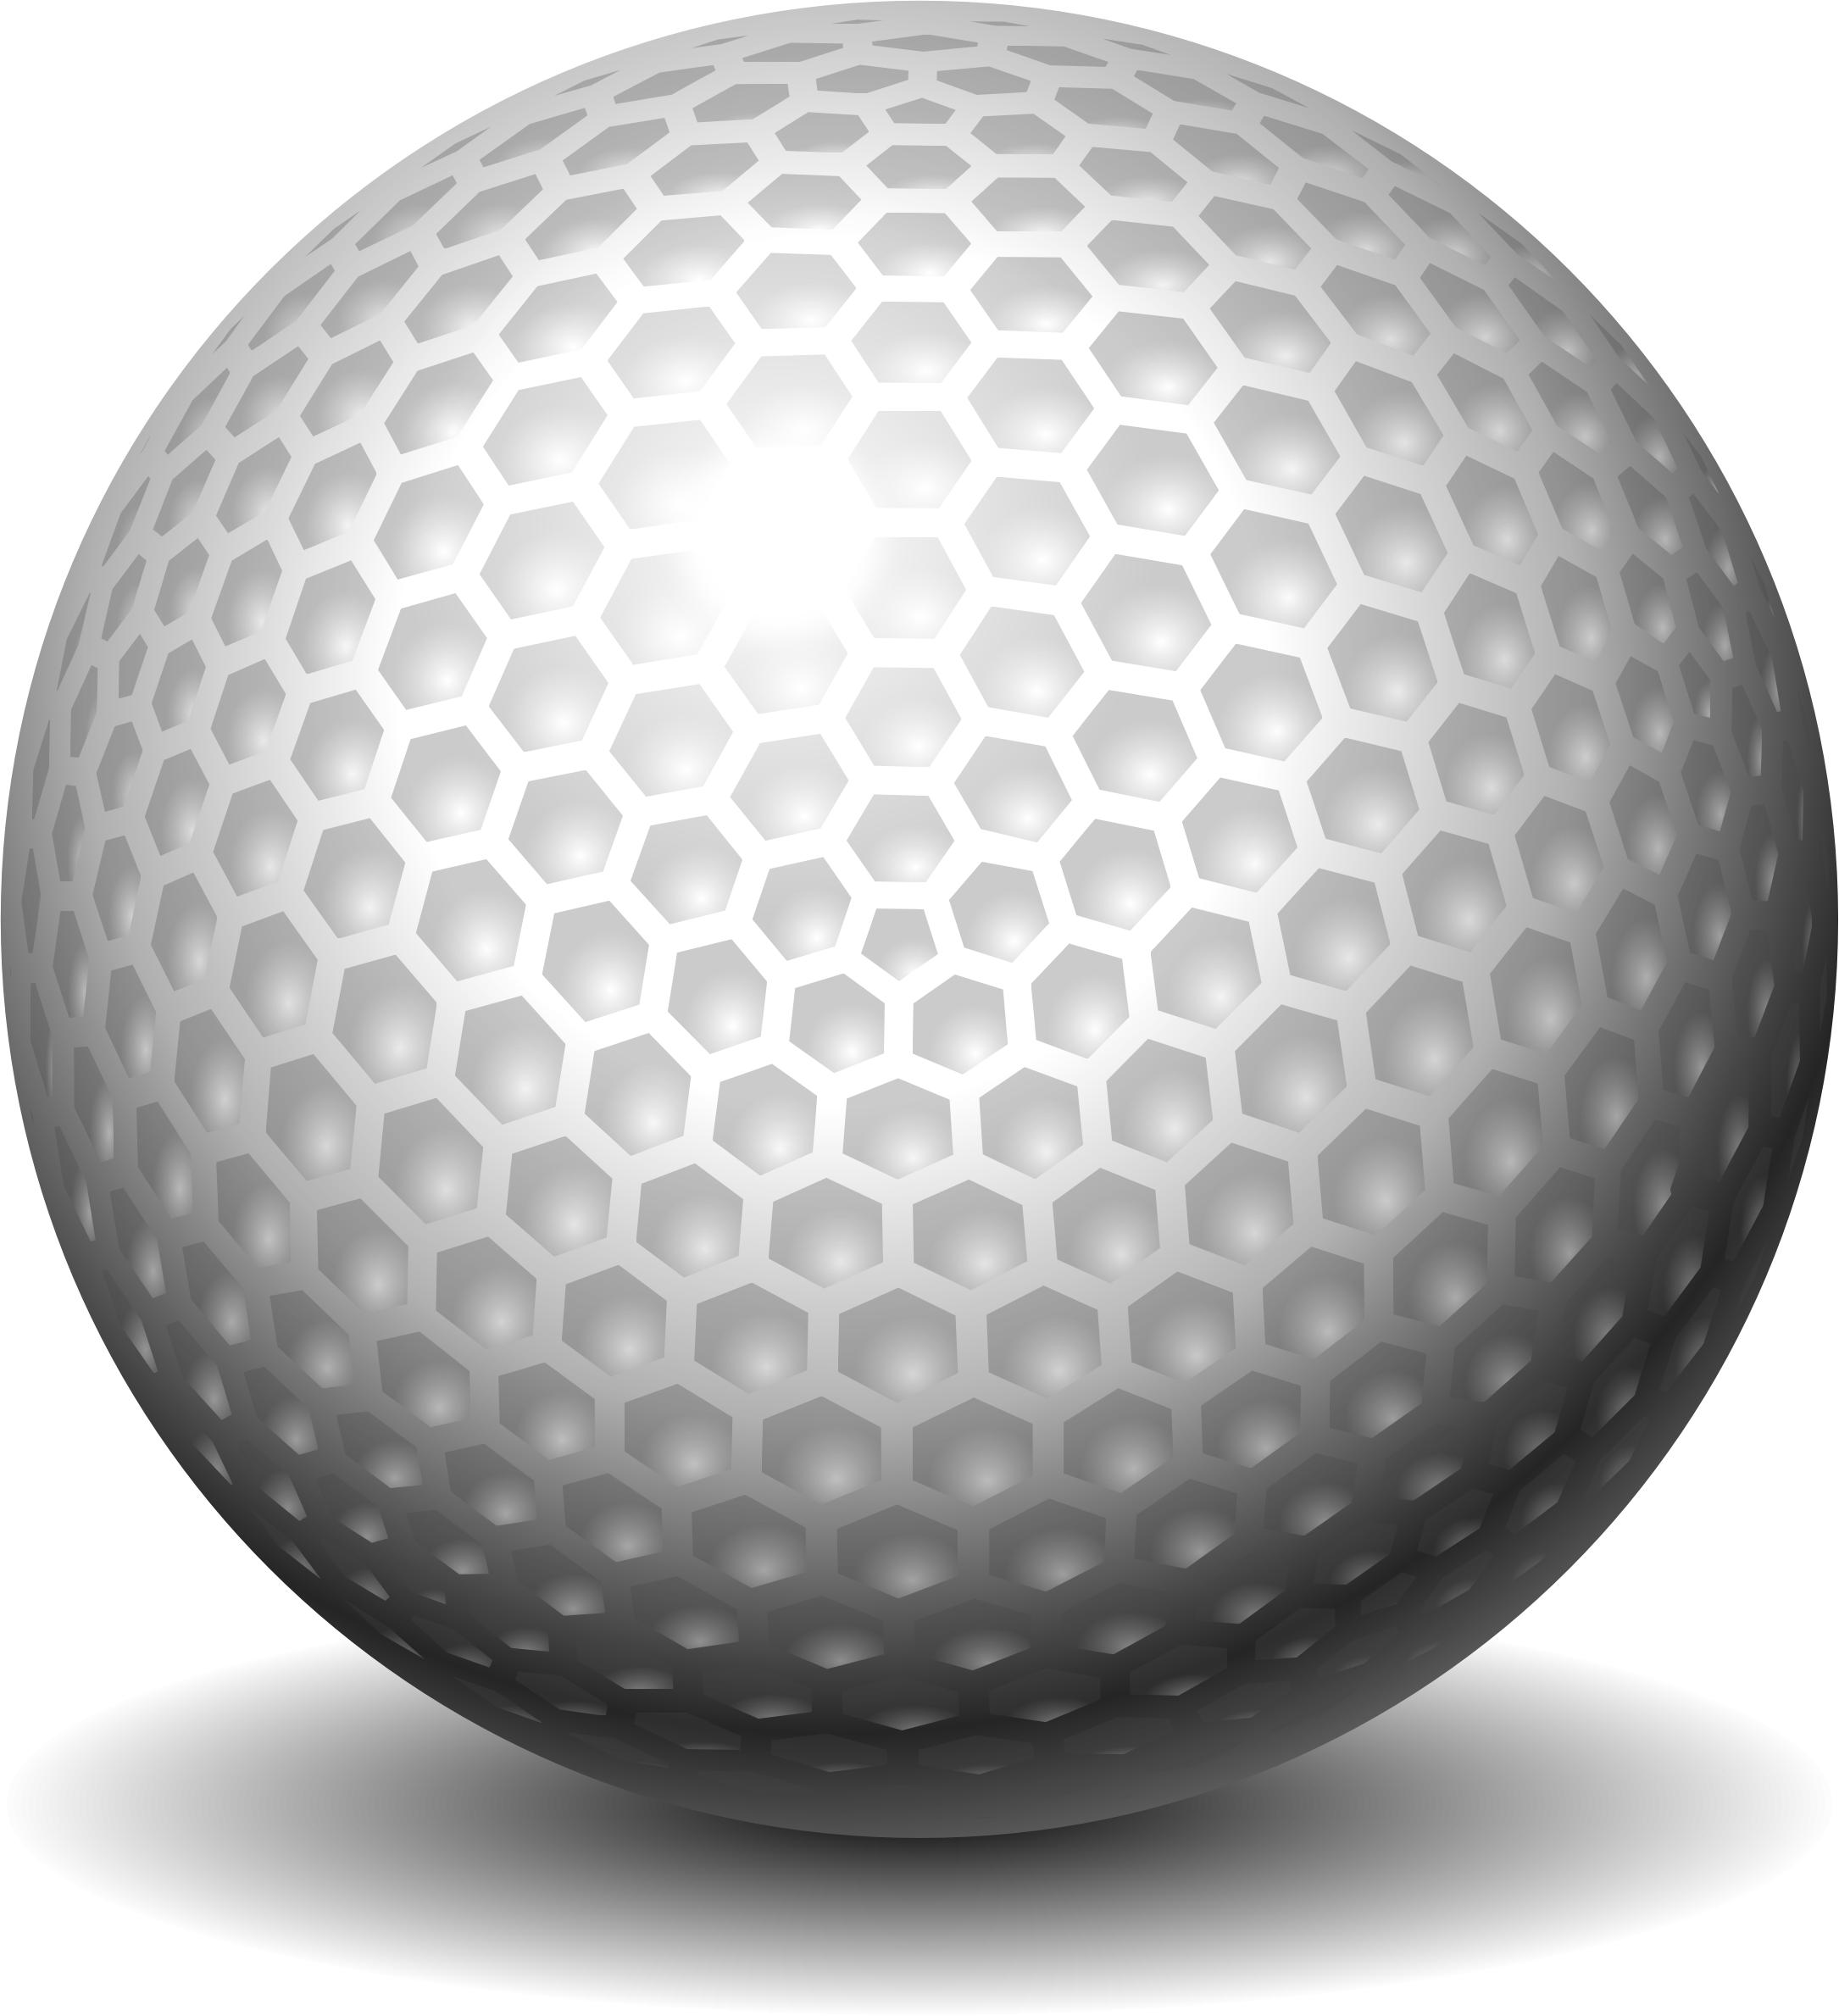 golf-ball, golfo kamuoliukas png